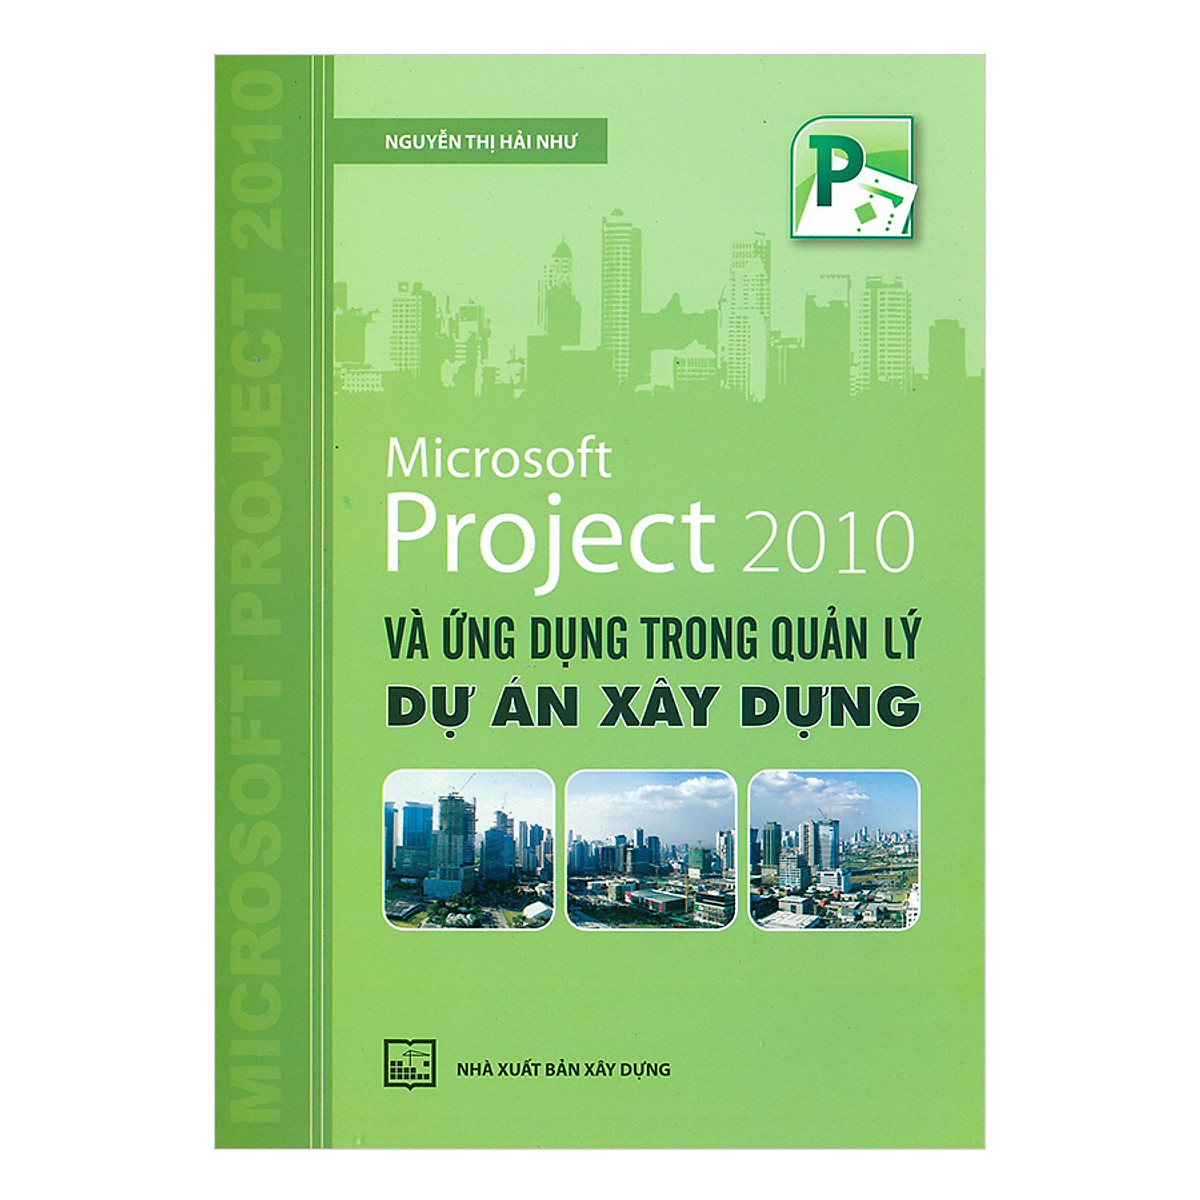 Microsoft Project 2010 Và Ứng Dụng Trong Quản Lý Dự Án Xây Dựng